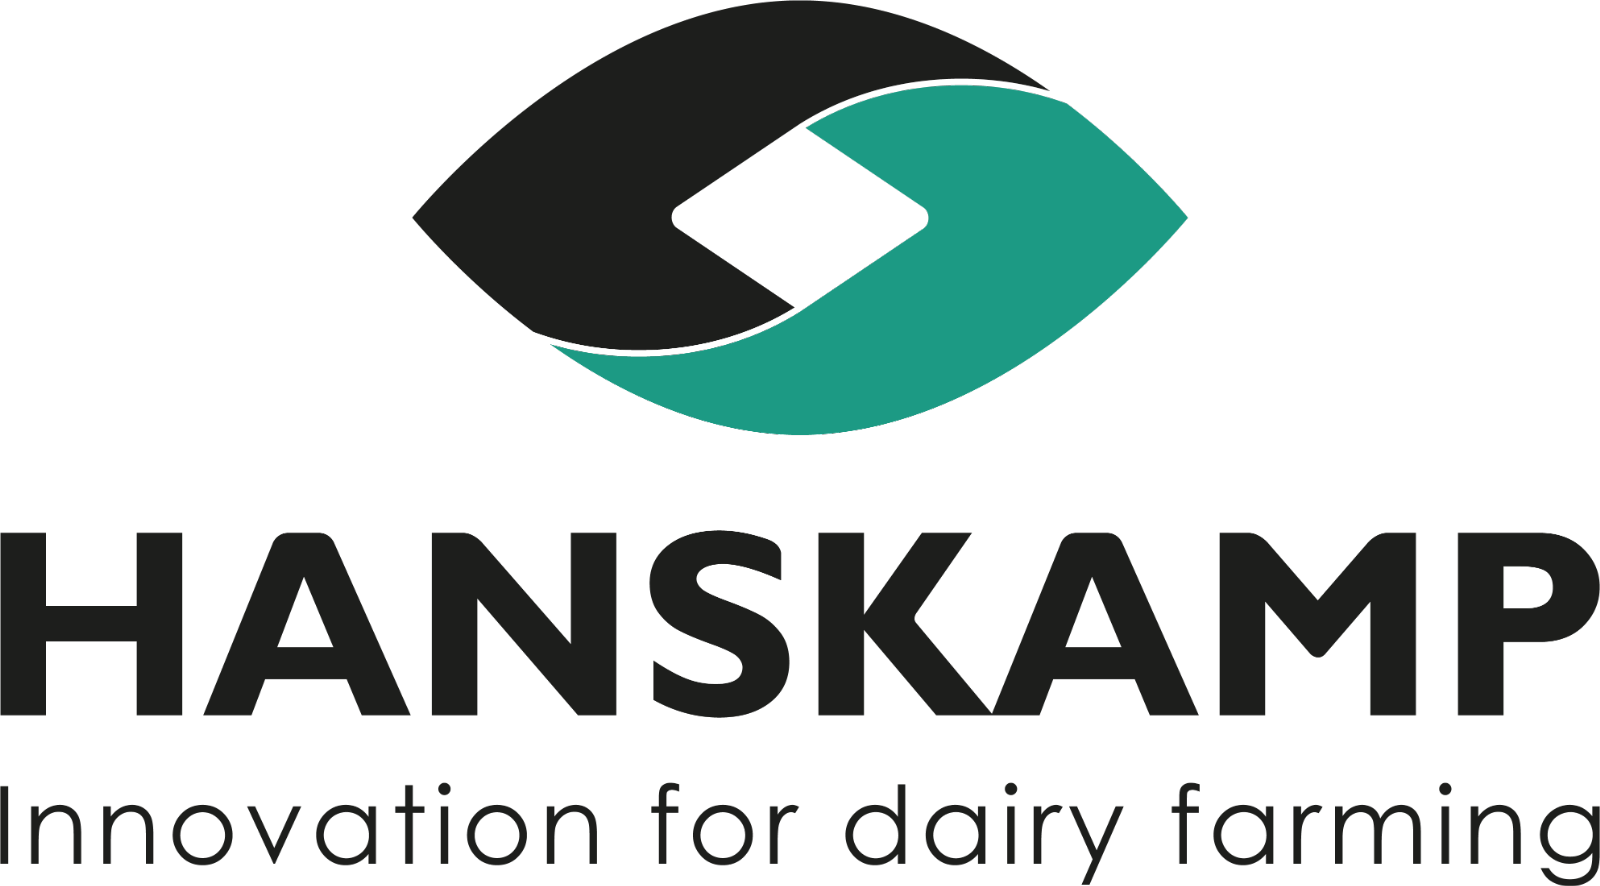 Hanskamp logo